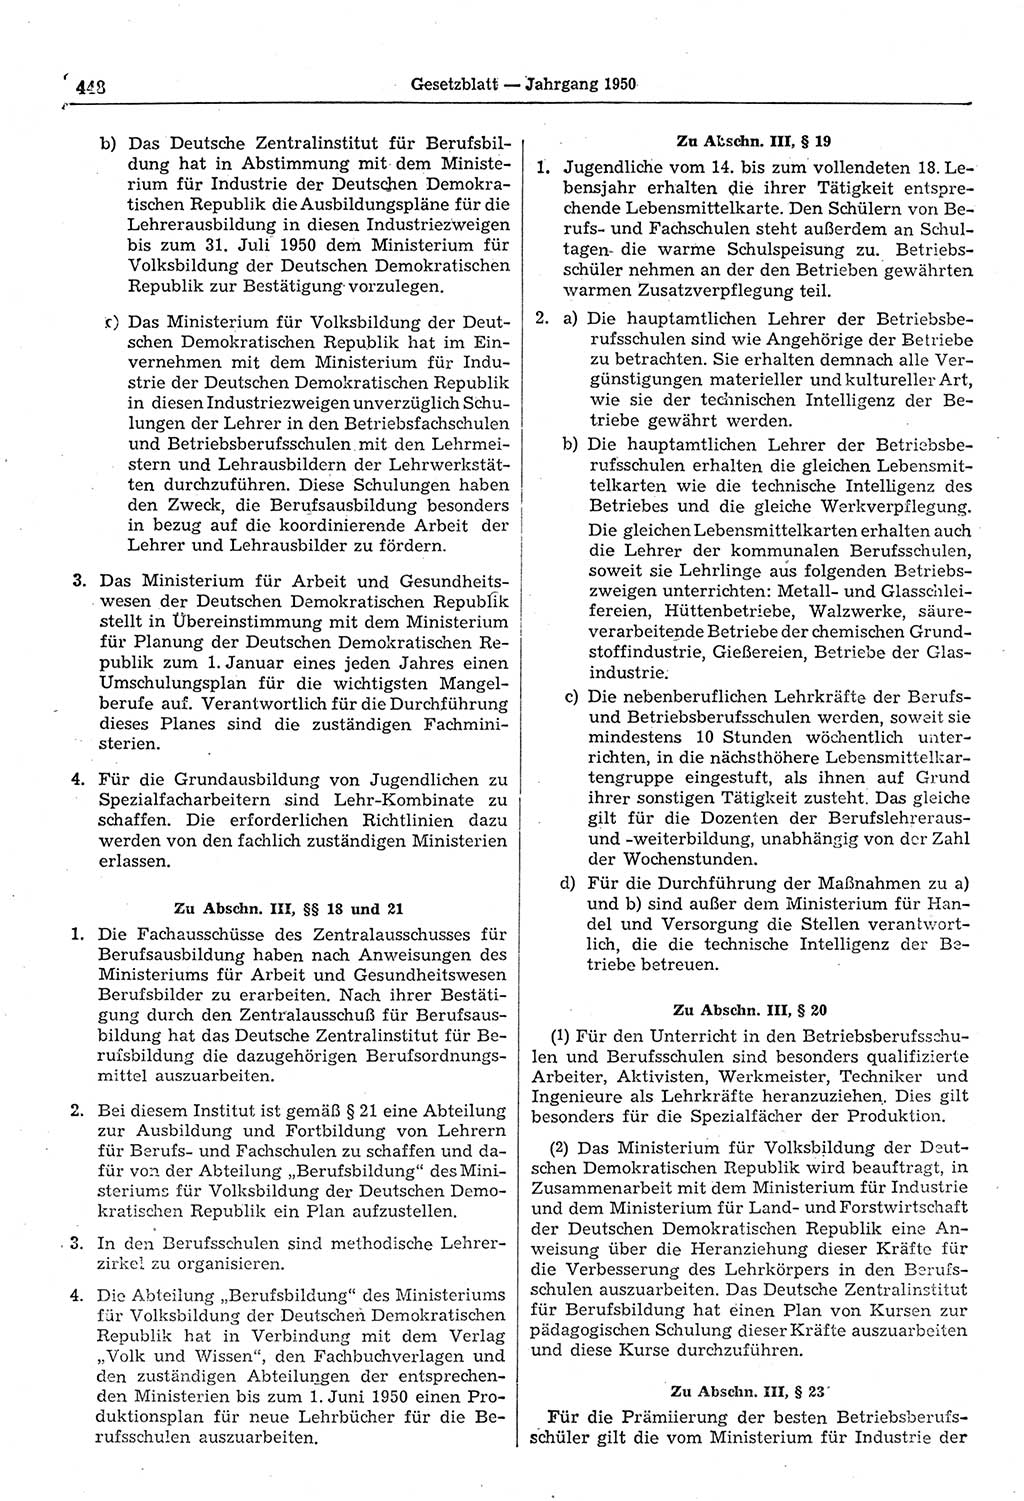 Gesetzblatt (GBl.) der Deutschen Demokratischen Republik (DDR) 1950, Seite 448 (GBl. DDR 1950, S. 448)